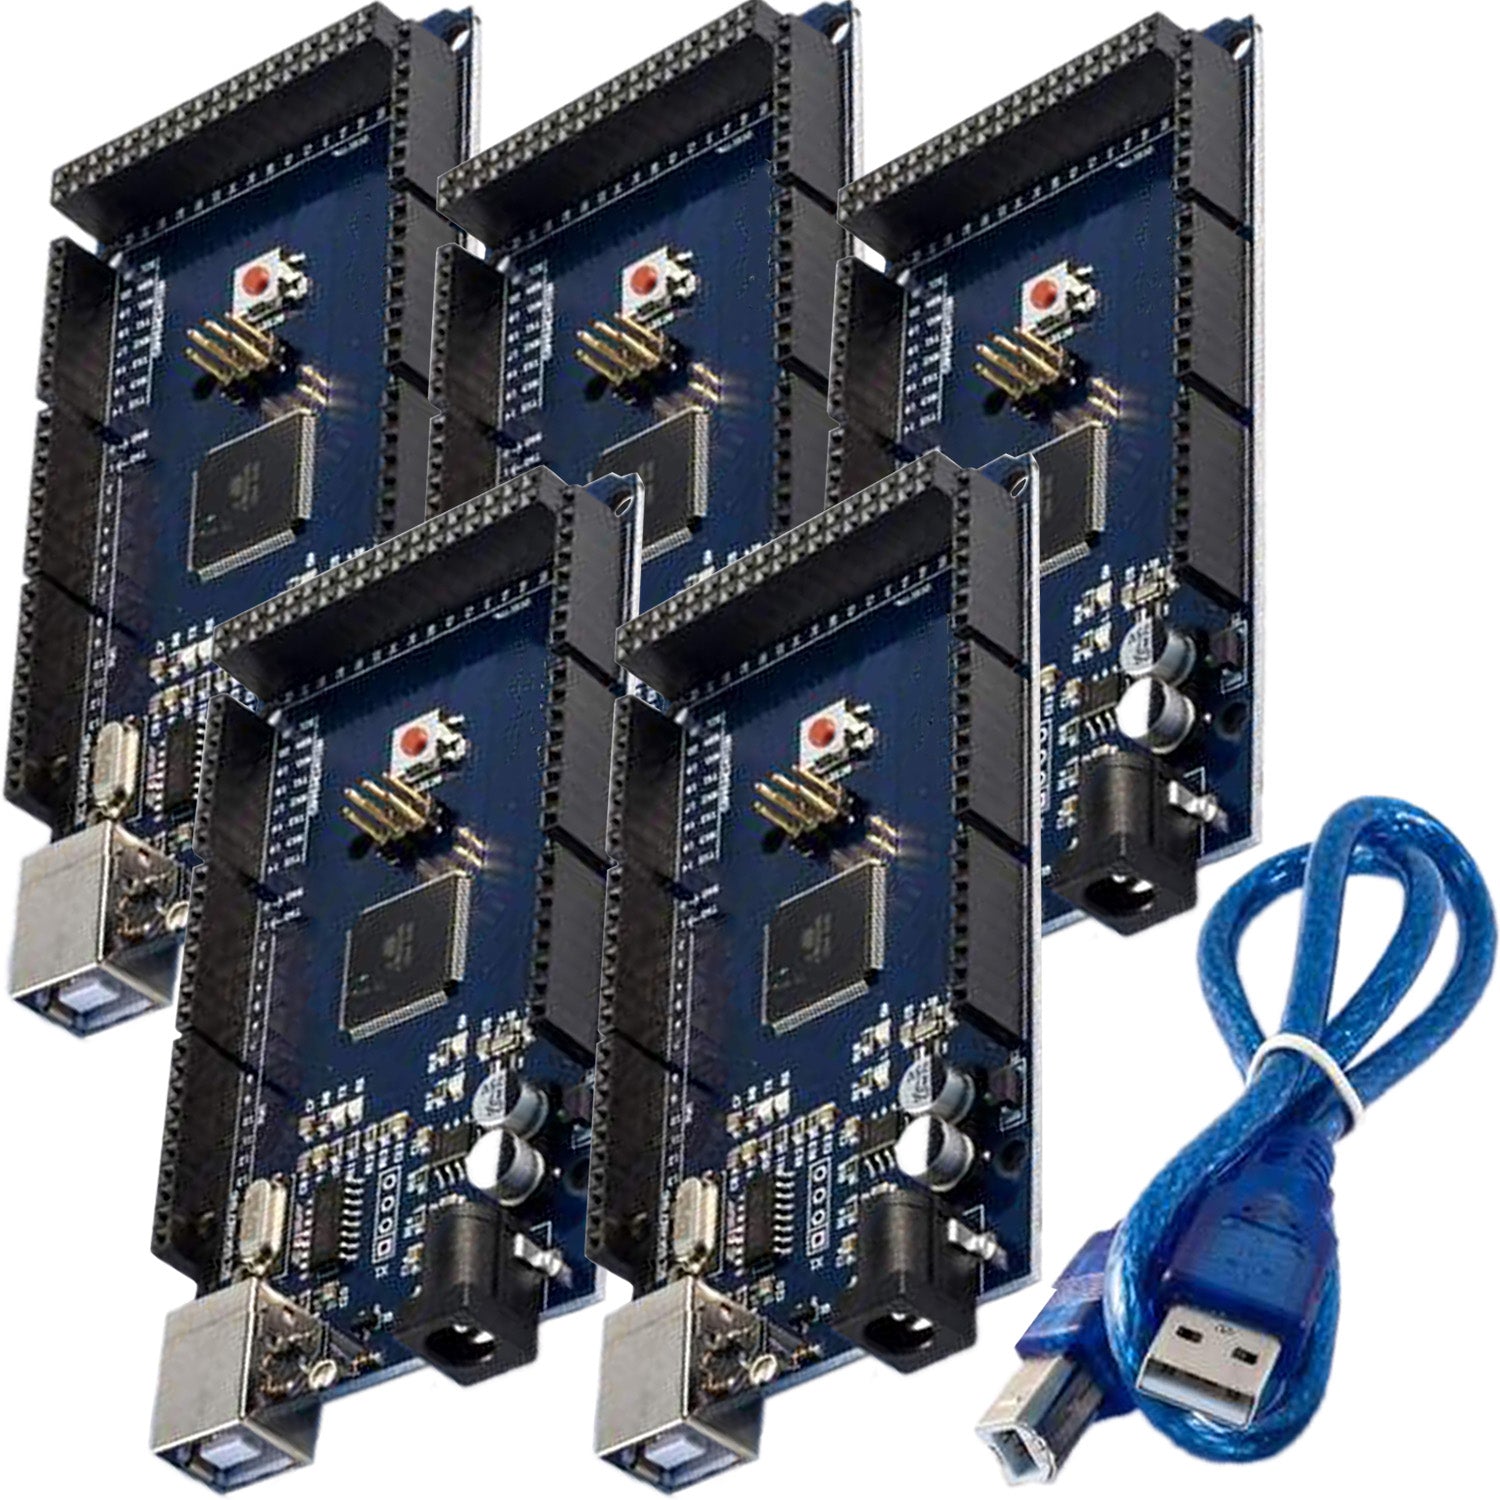 AZ-MEGA2560-Board mit ATmega2560 mit USB Kabel - AZ-Delivery